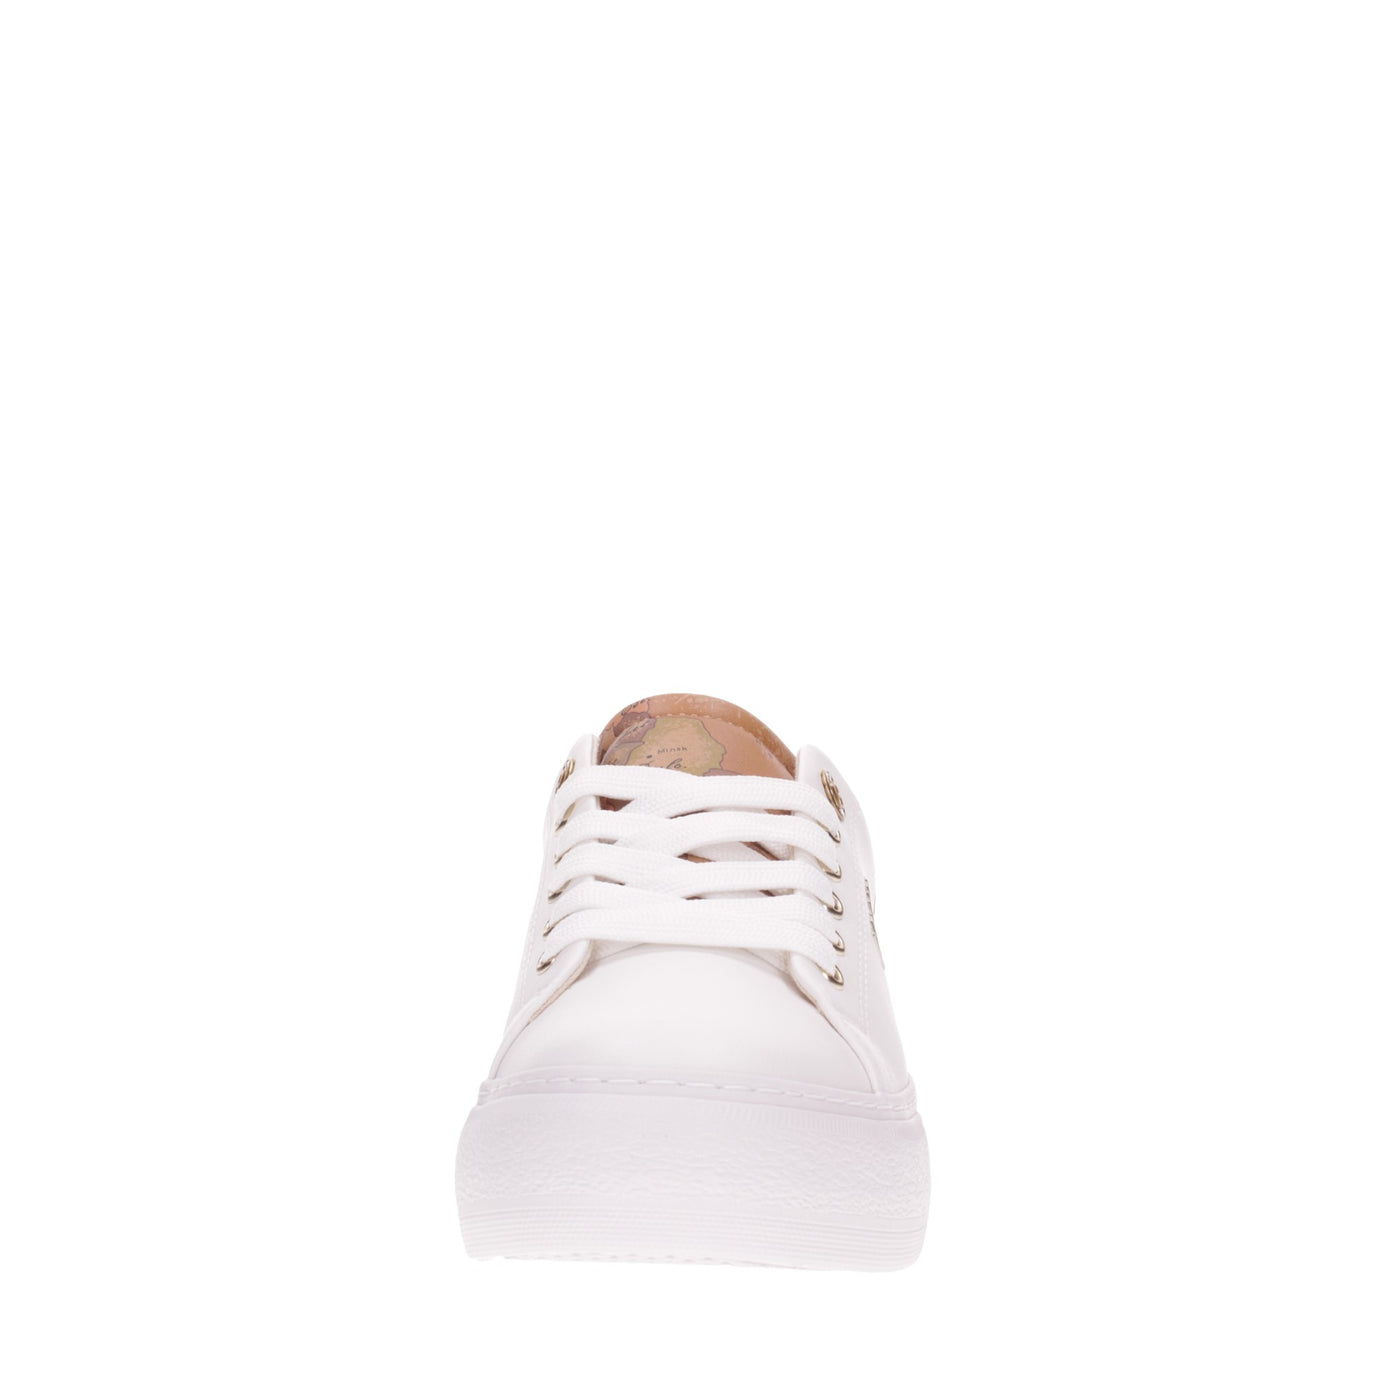 Alviero martini Sneakers#colore_bianco